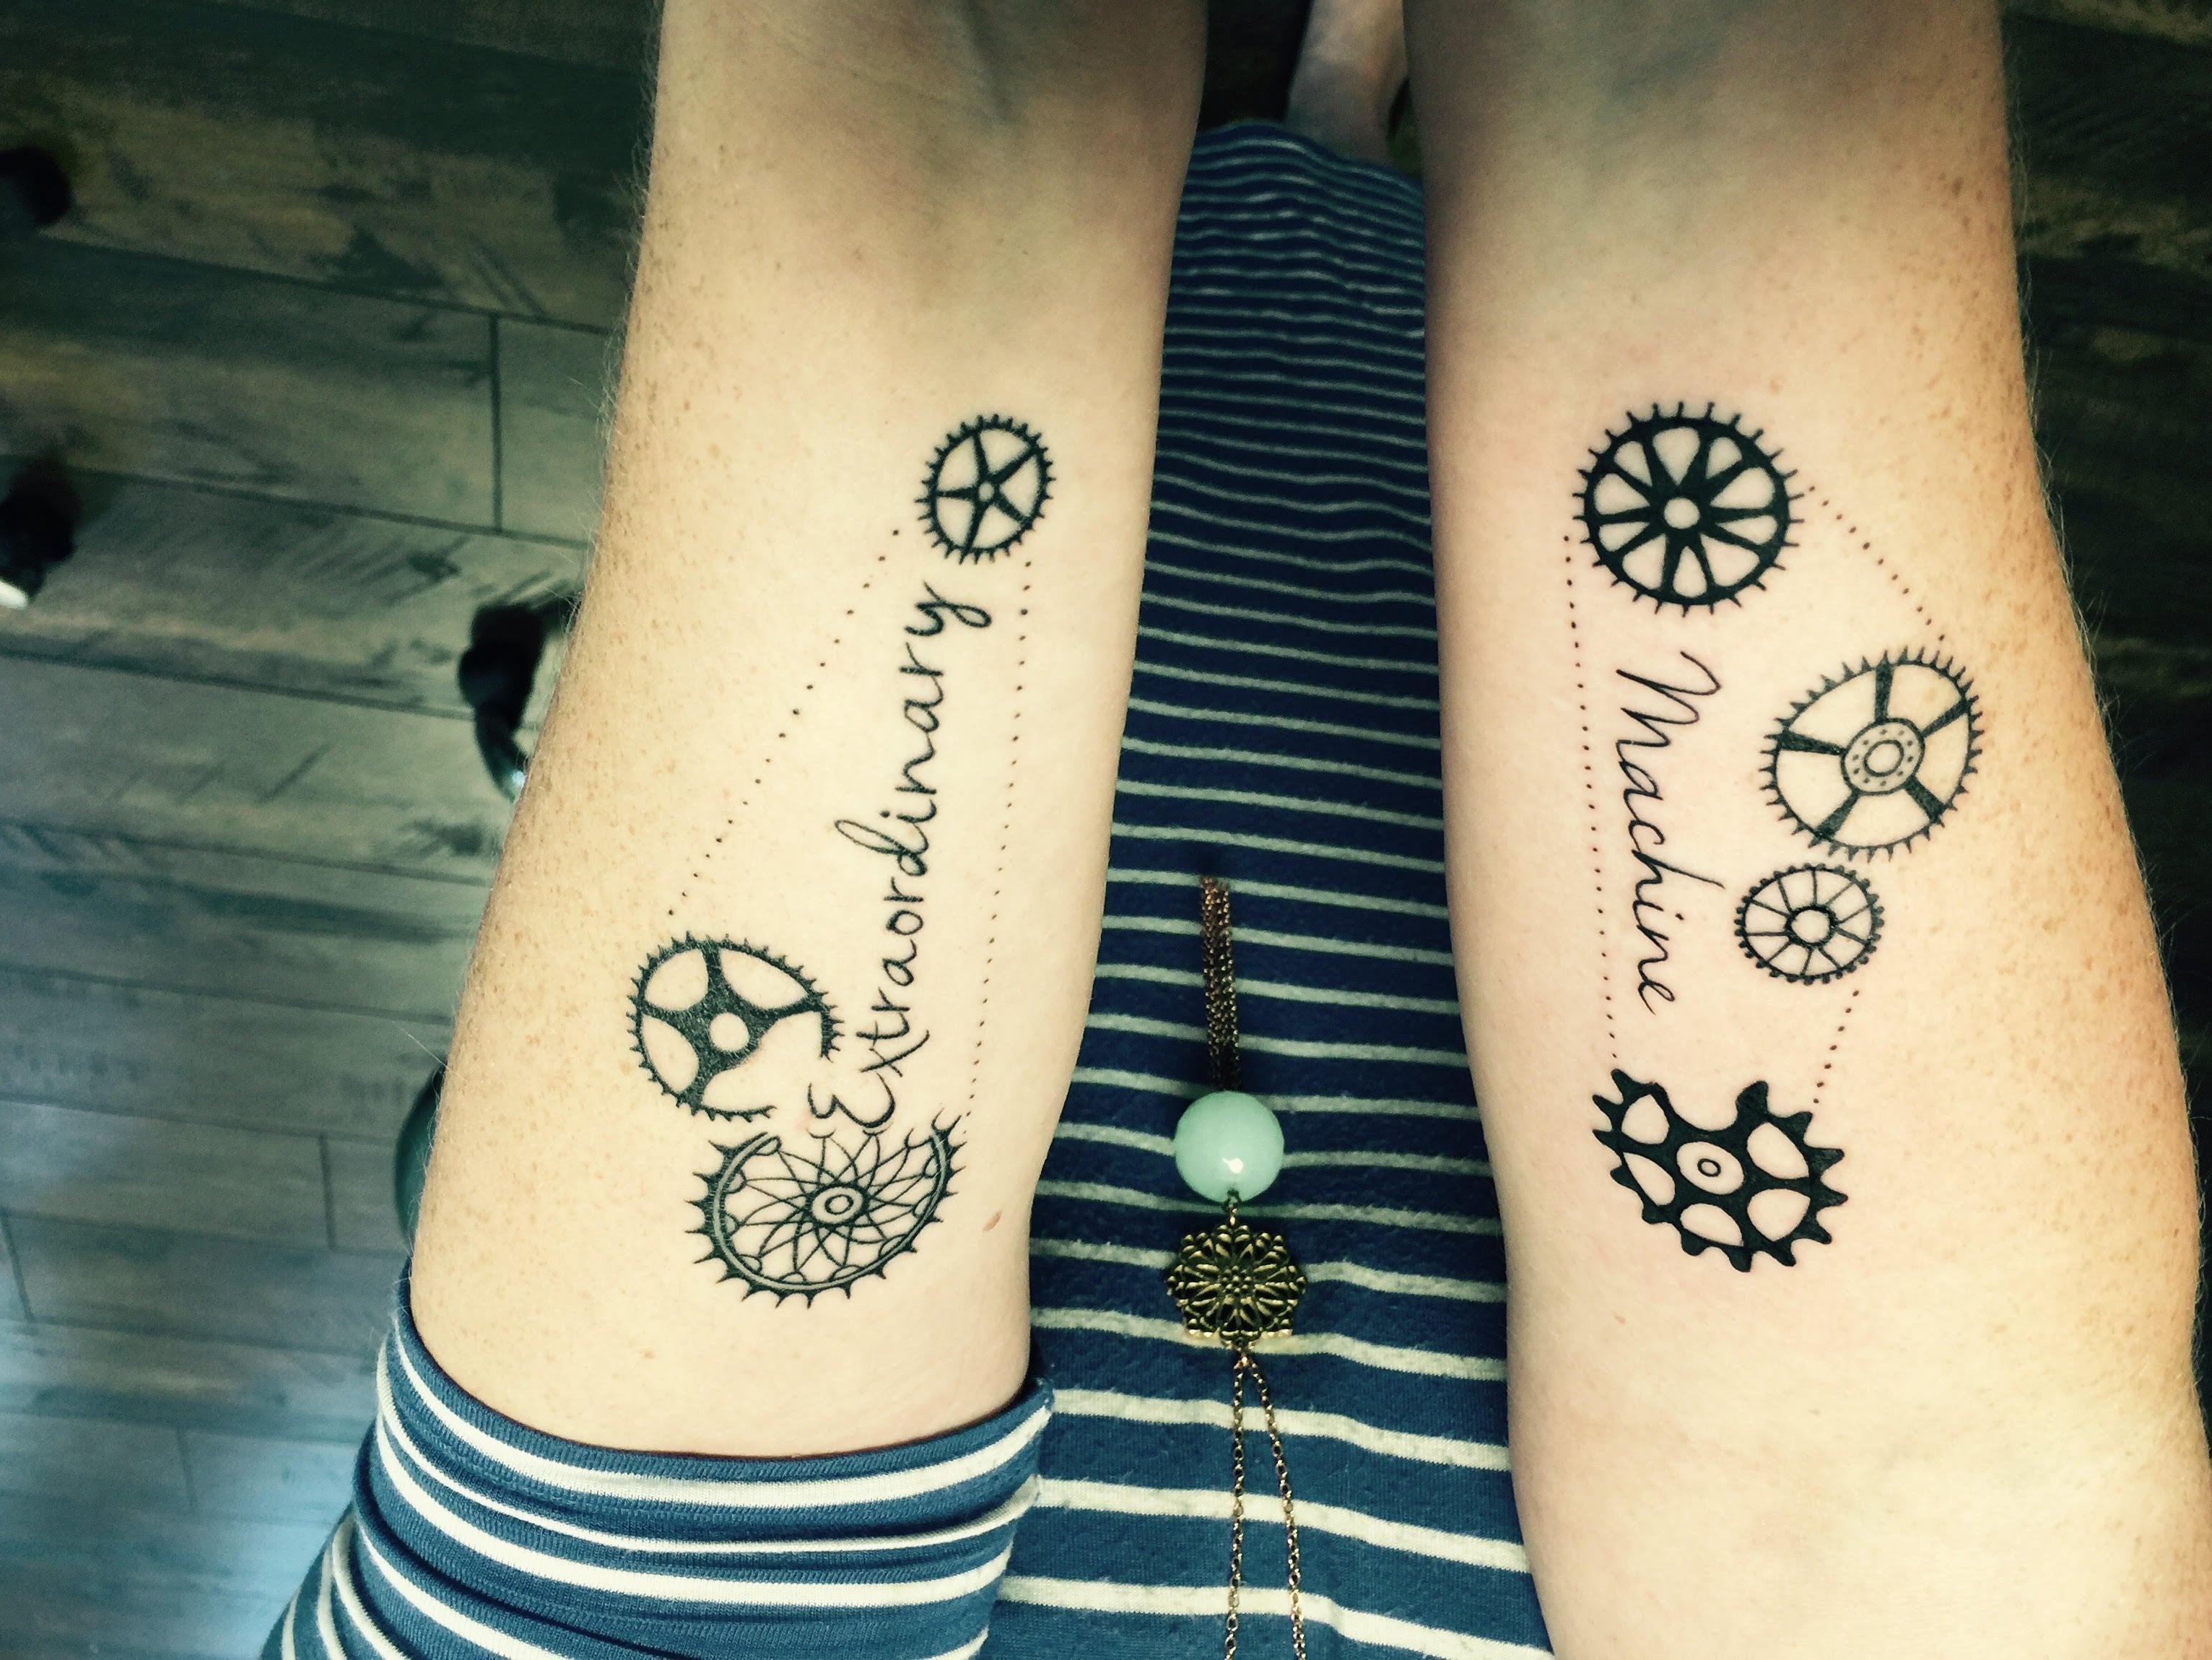 Pin by Agnieszka Grabowska on Tattoo's | Skull tattoo, Tattoos, Flash tattoo